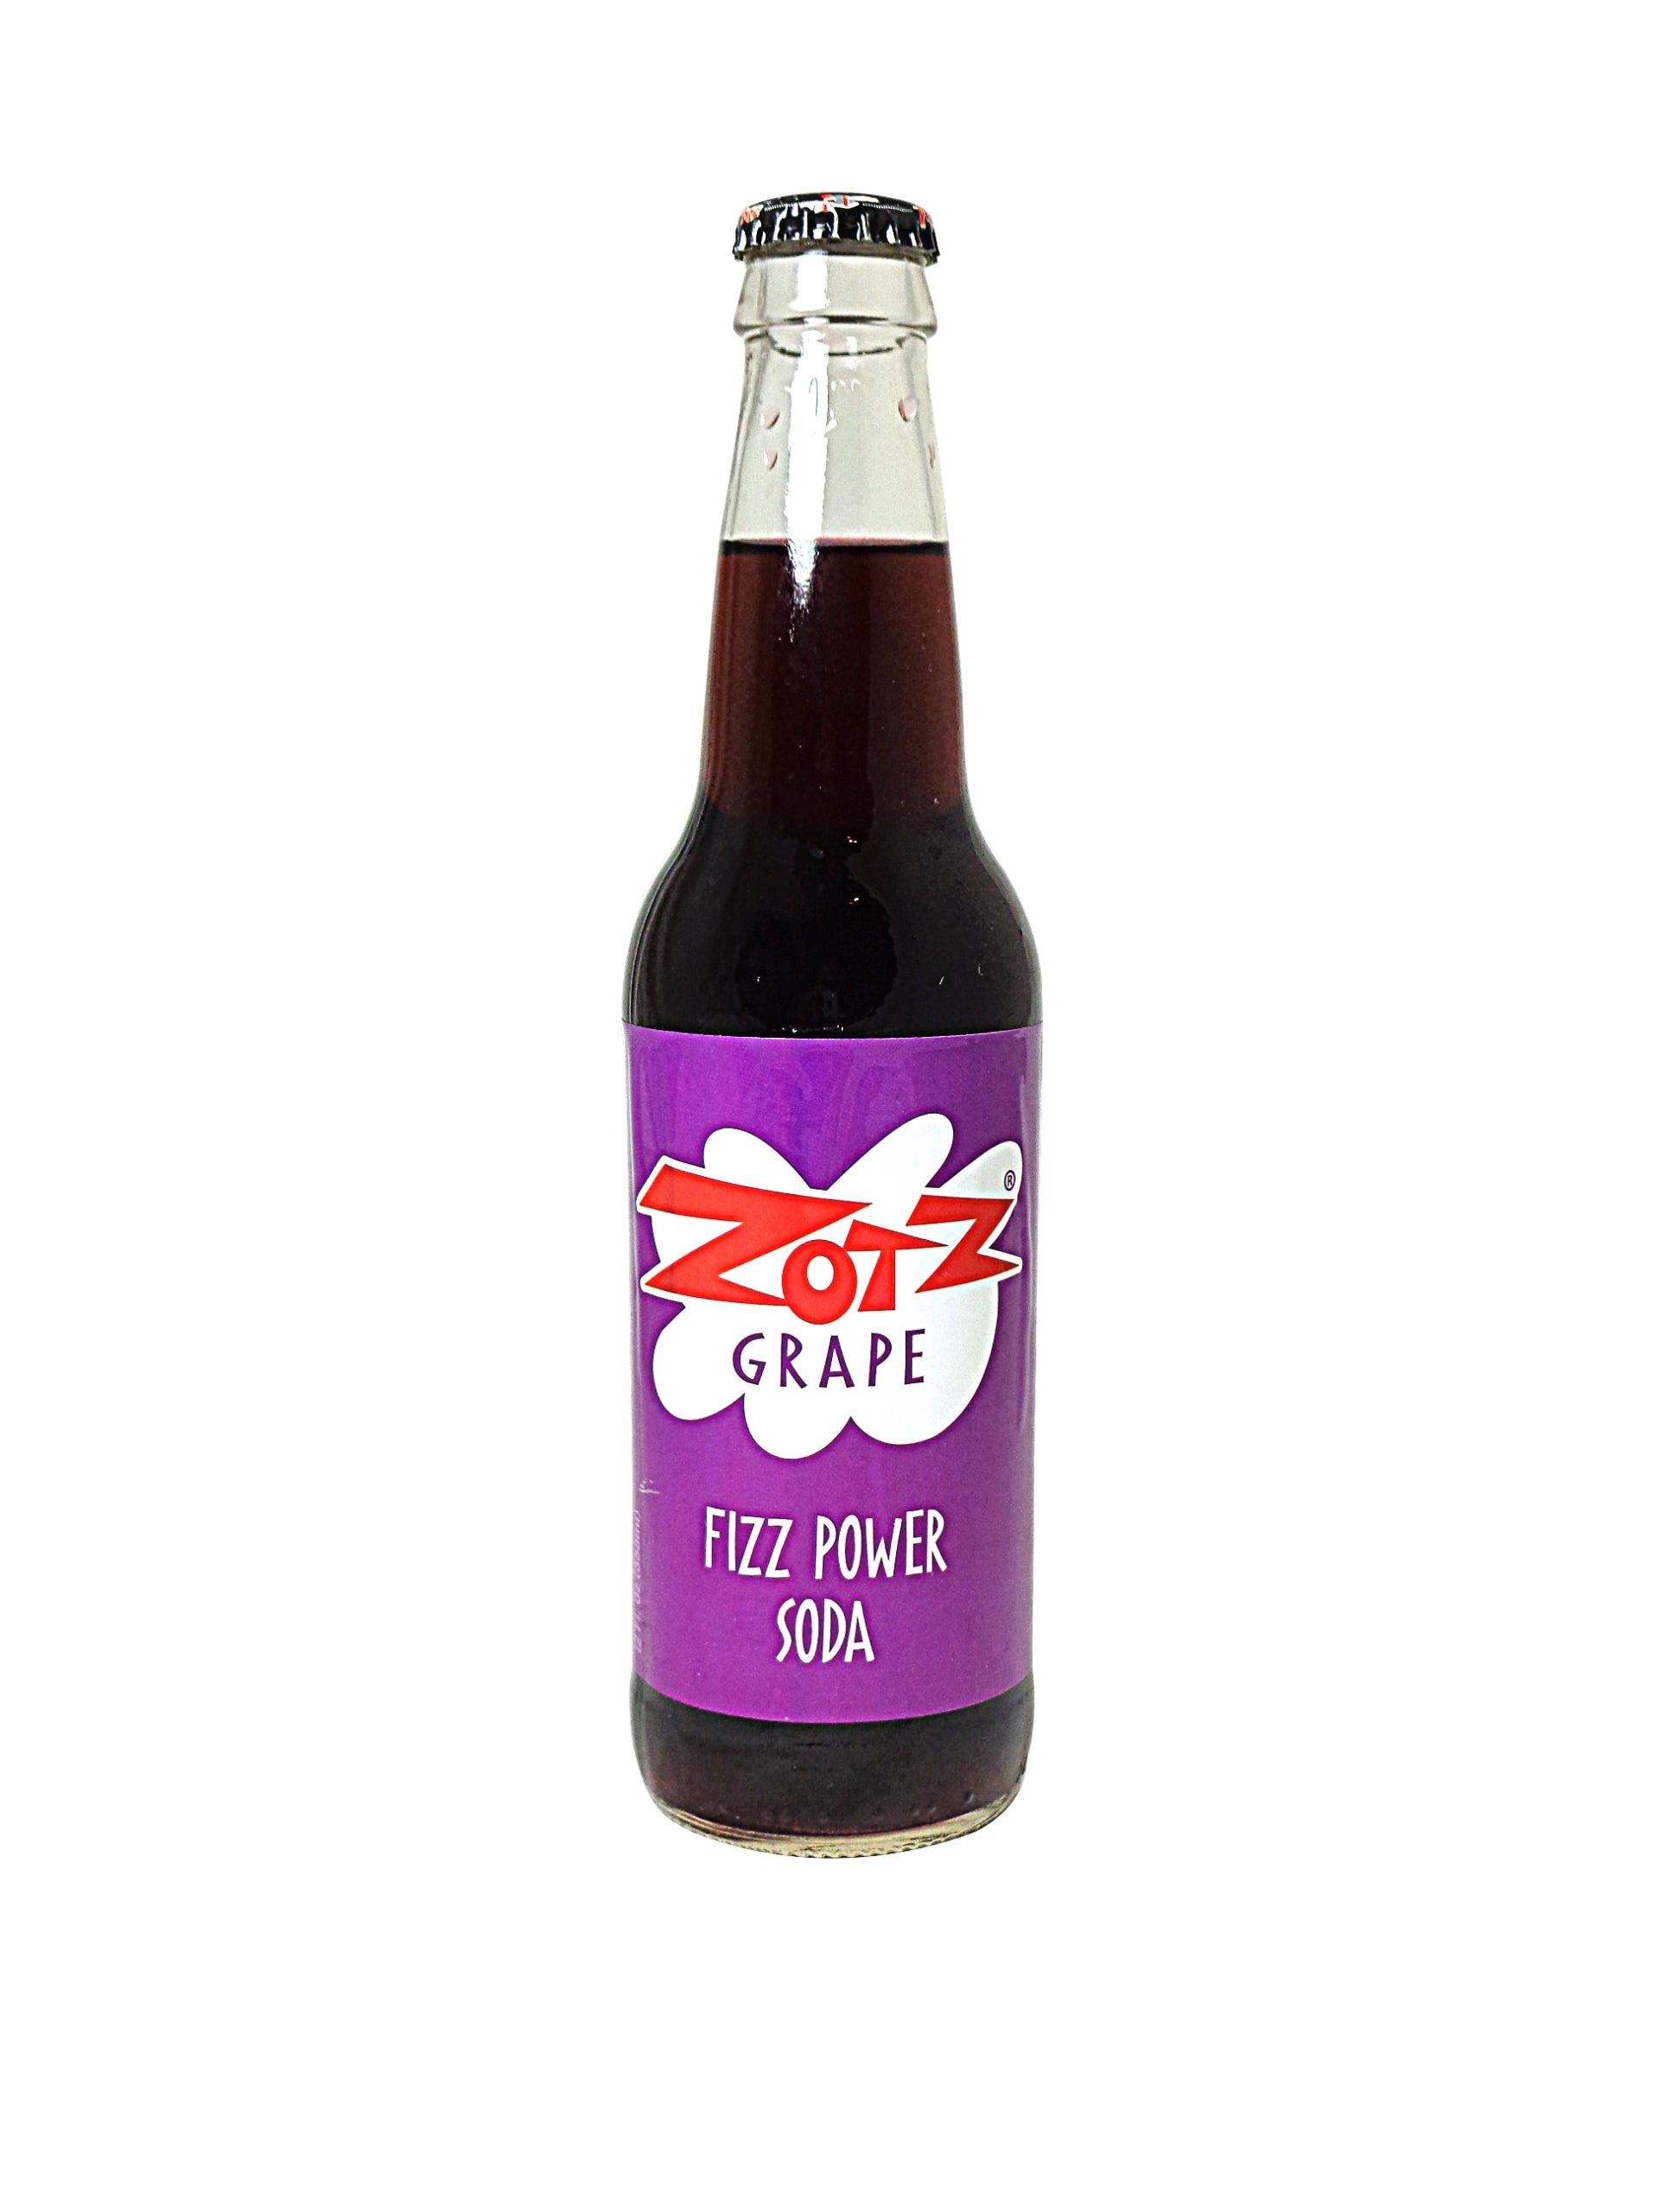 Rocket Fizz Zotz Grape Fizz Power Soda 12 oz